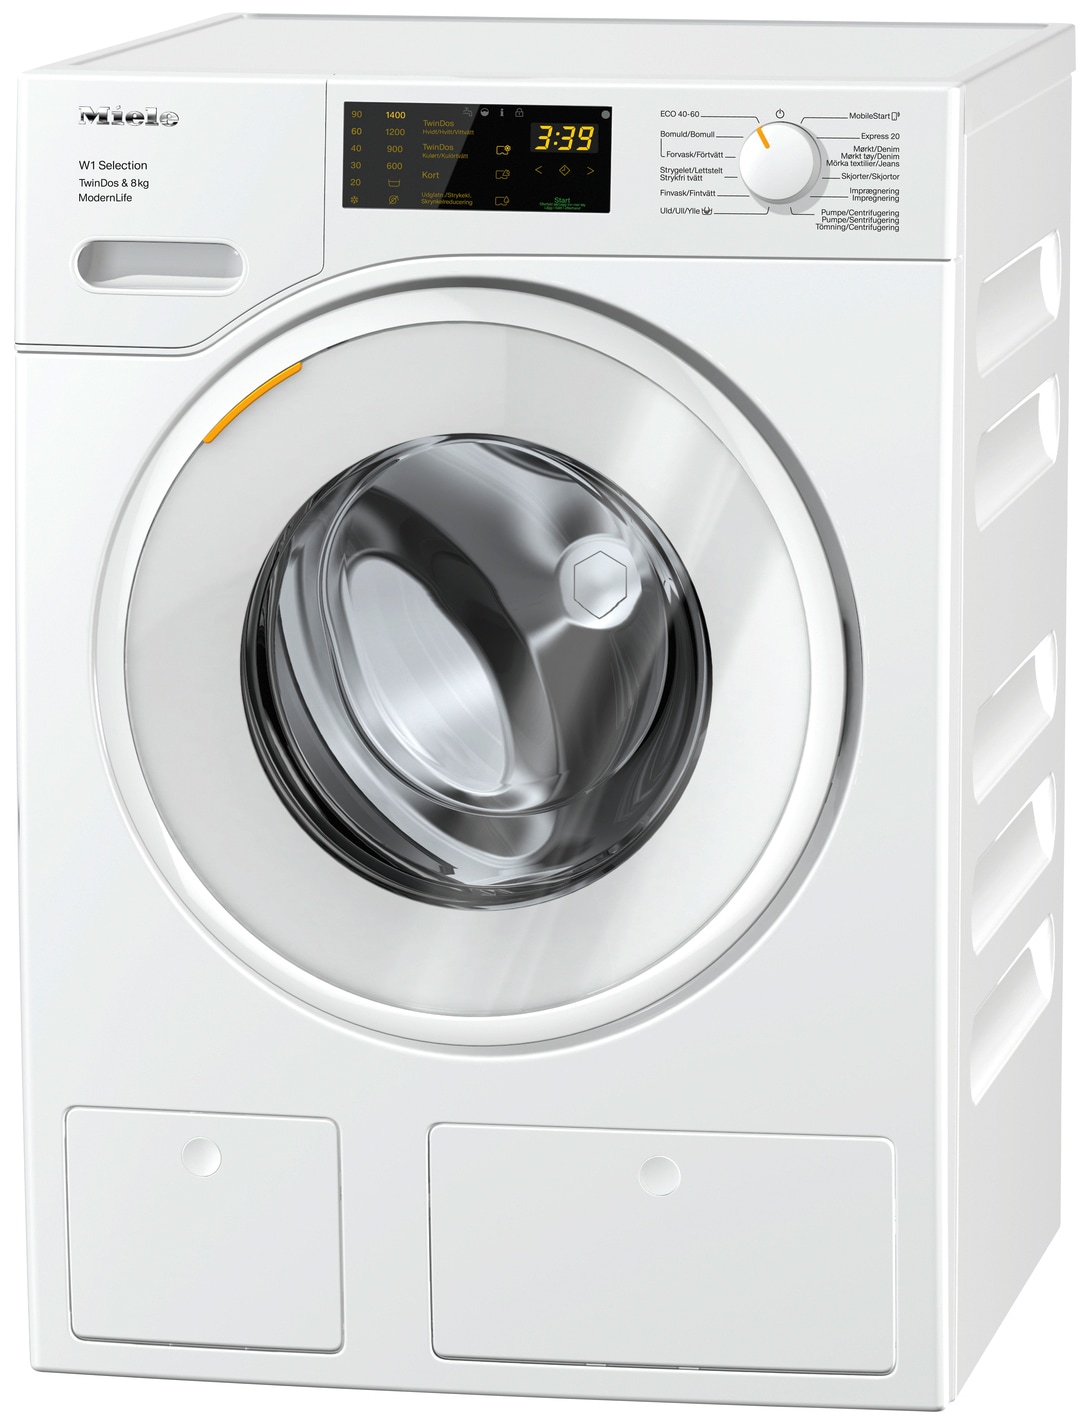 Oplev enestående tøjpleje med Miele WSD663 WCS. Automatisk dosering og  ekstra skånsom vask sikrer et strålende resultat.